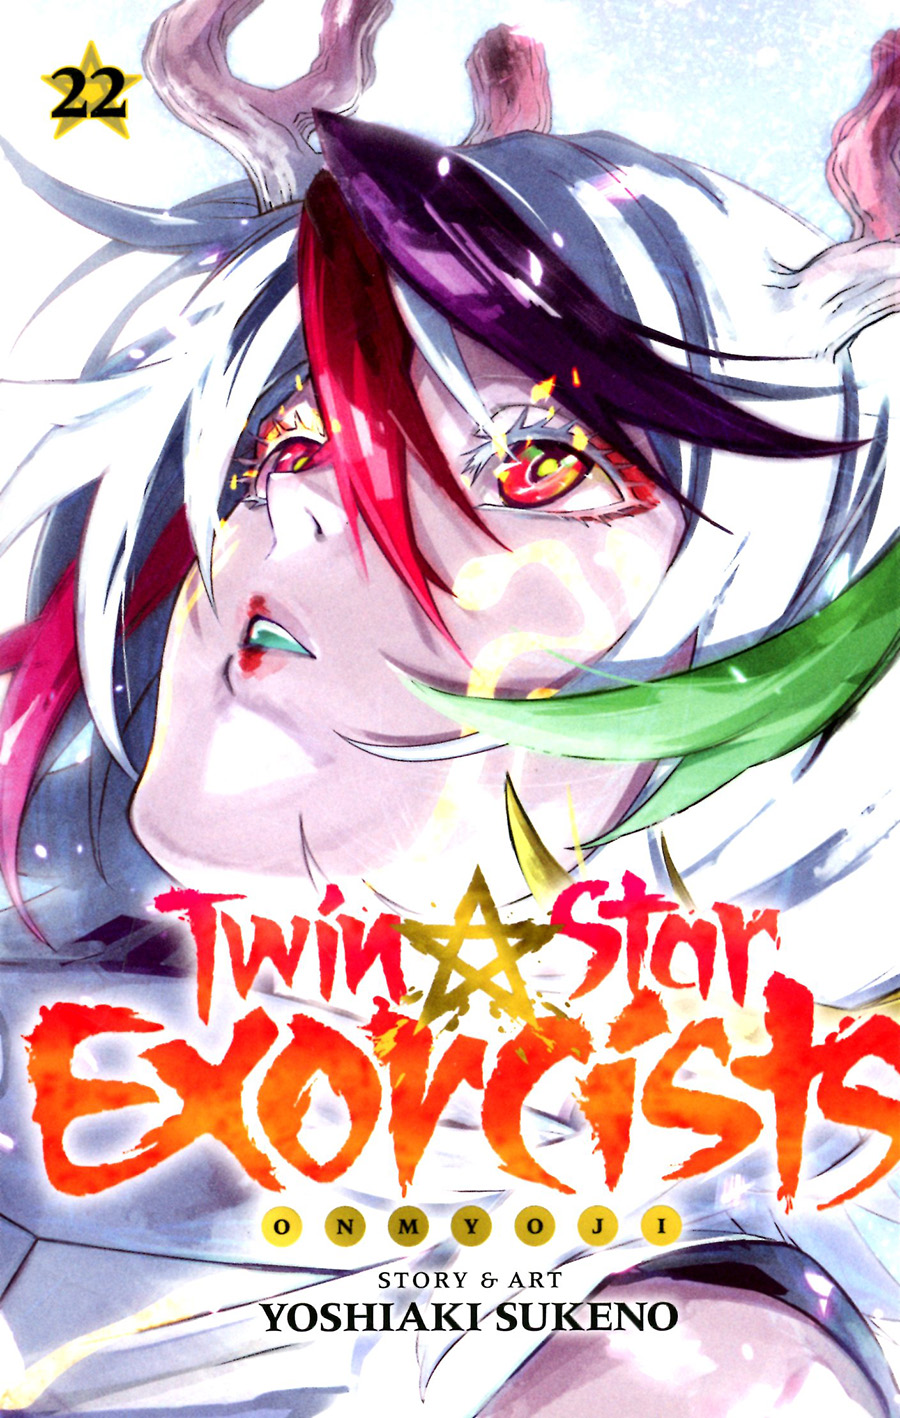 Twin Star Exorcists Onmyoji Vol 22 TP